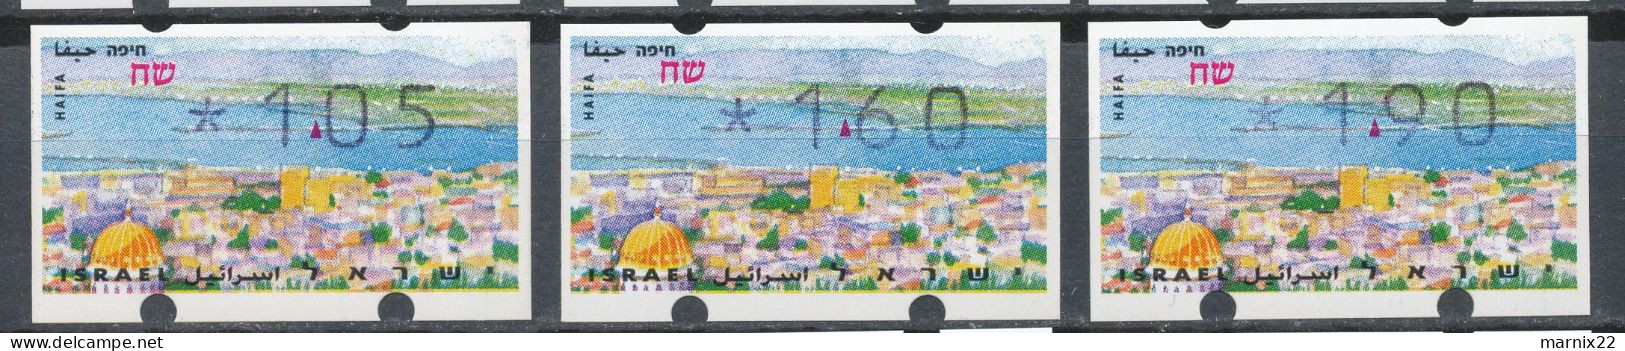 ISRAEL 1995-1998 - FRAMA LABELS - 9 DIFFERENT SETS (30 Labels Together)                                            Hk2 - Vignettes D'affranchissement (Frama)